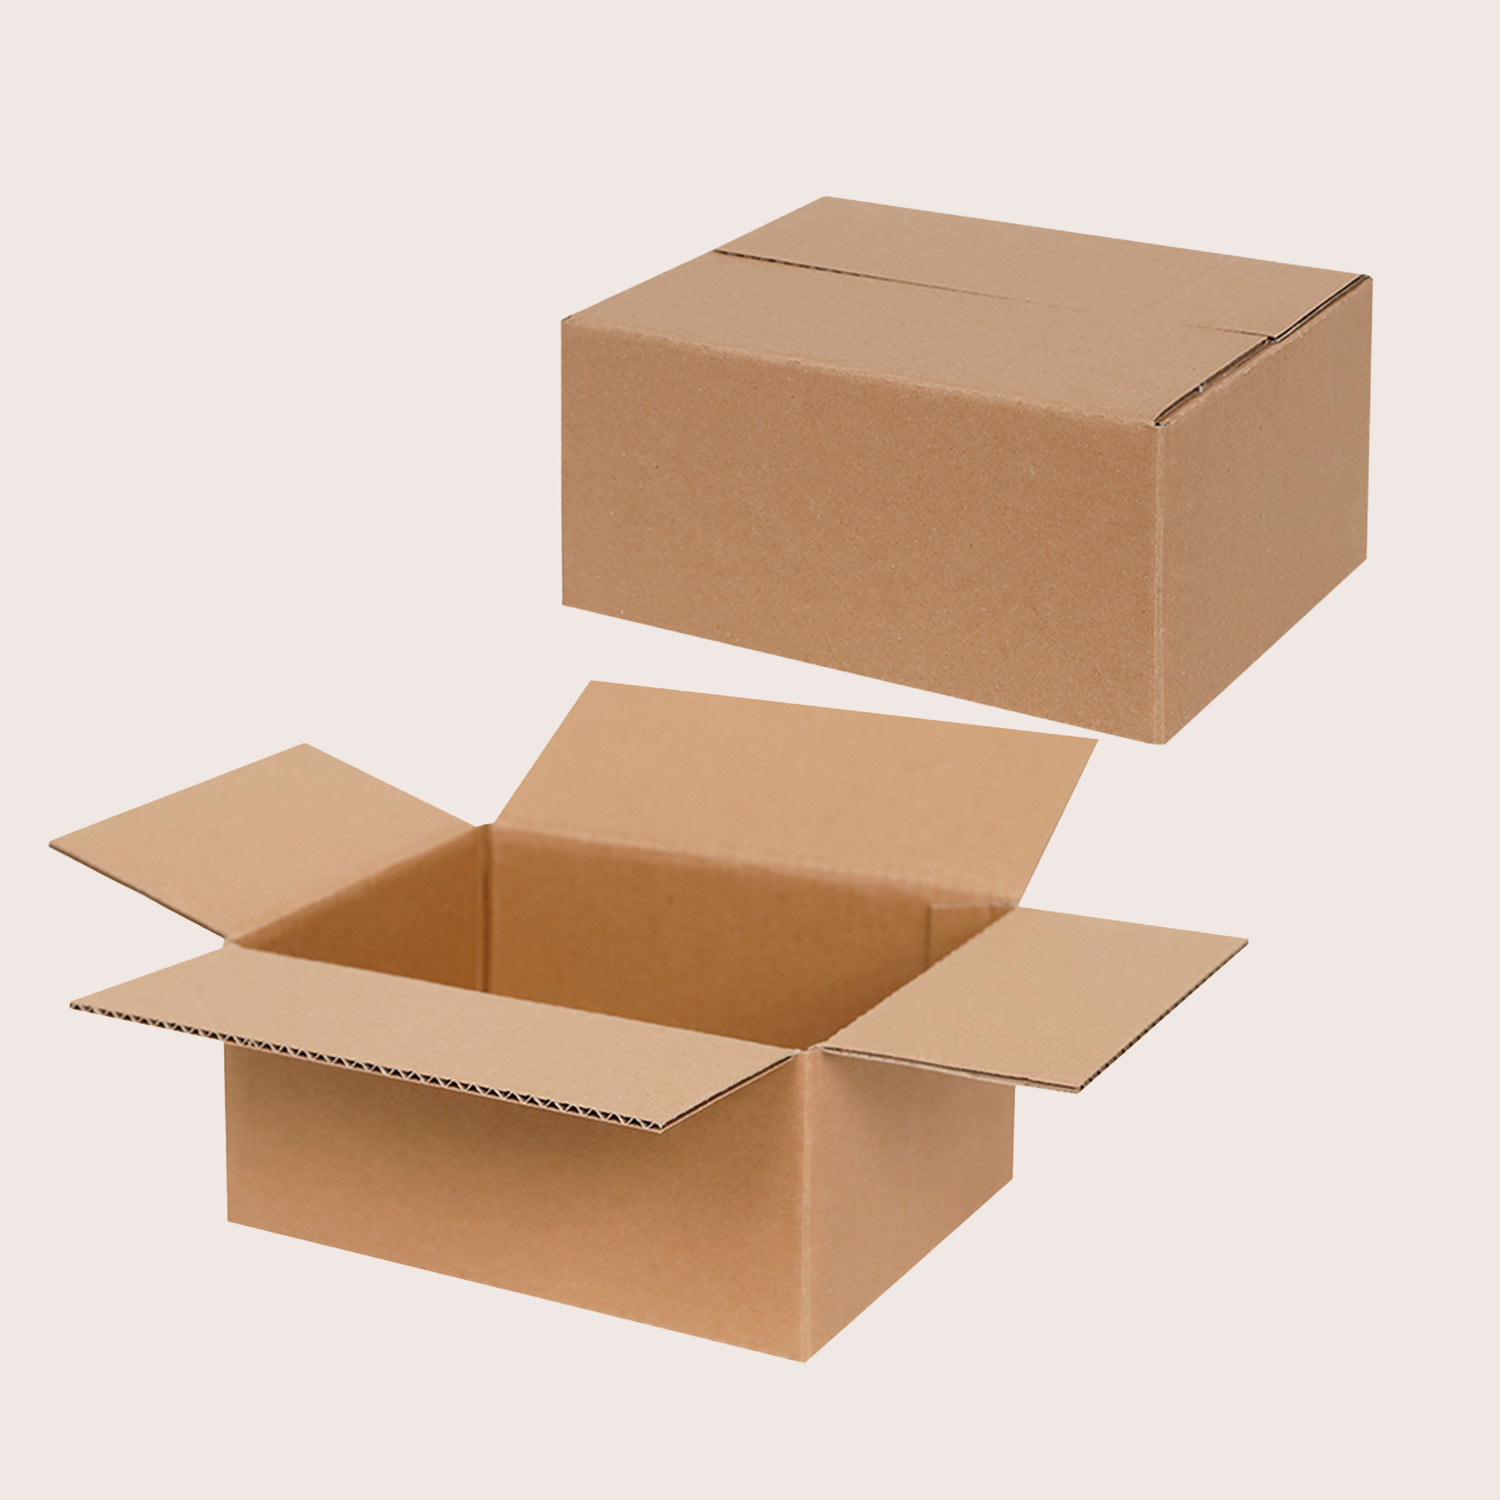 Caisses pliantes en carton ondulé de petite taille standard